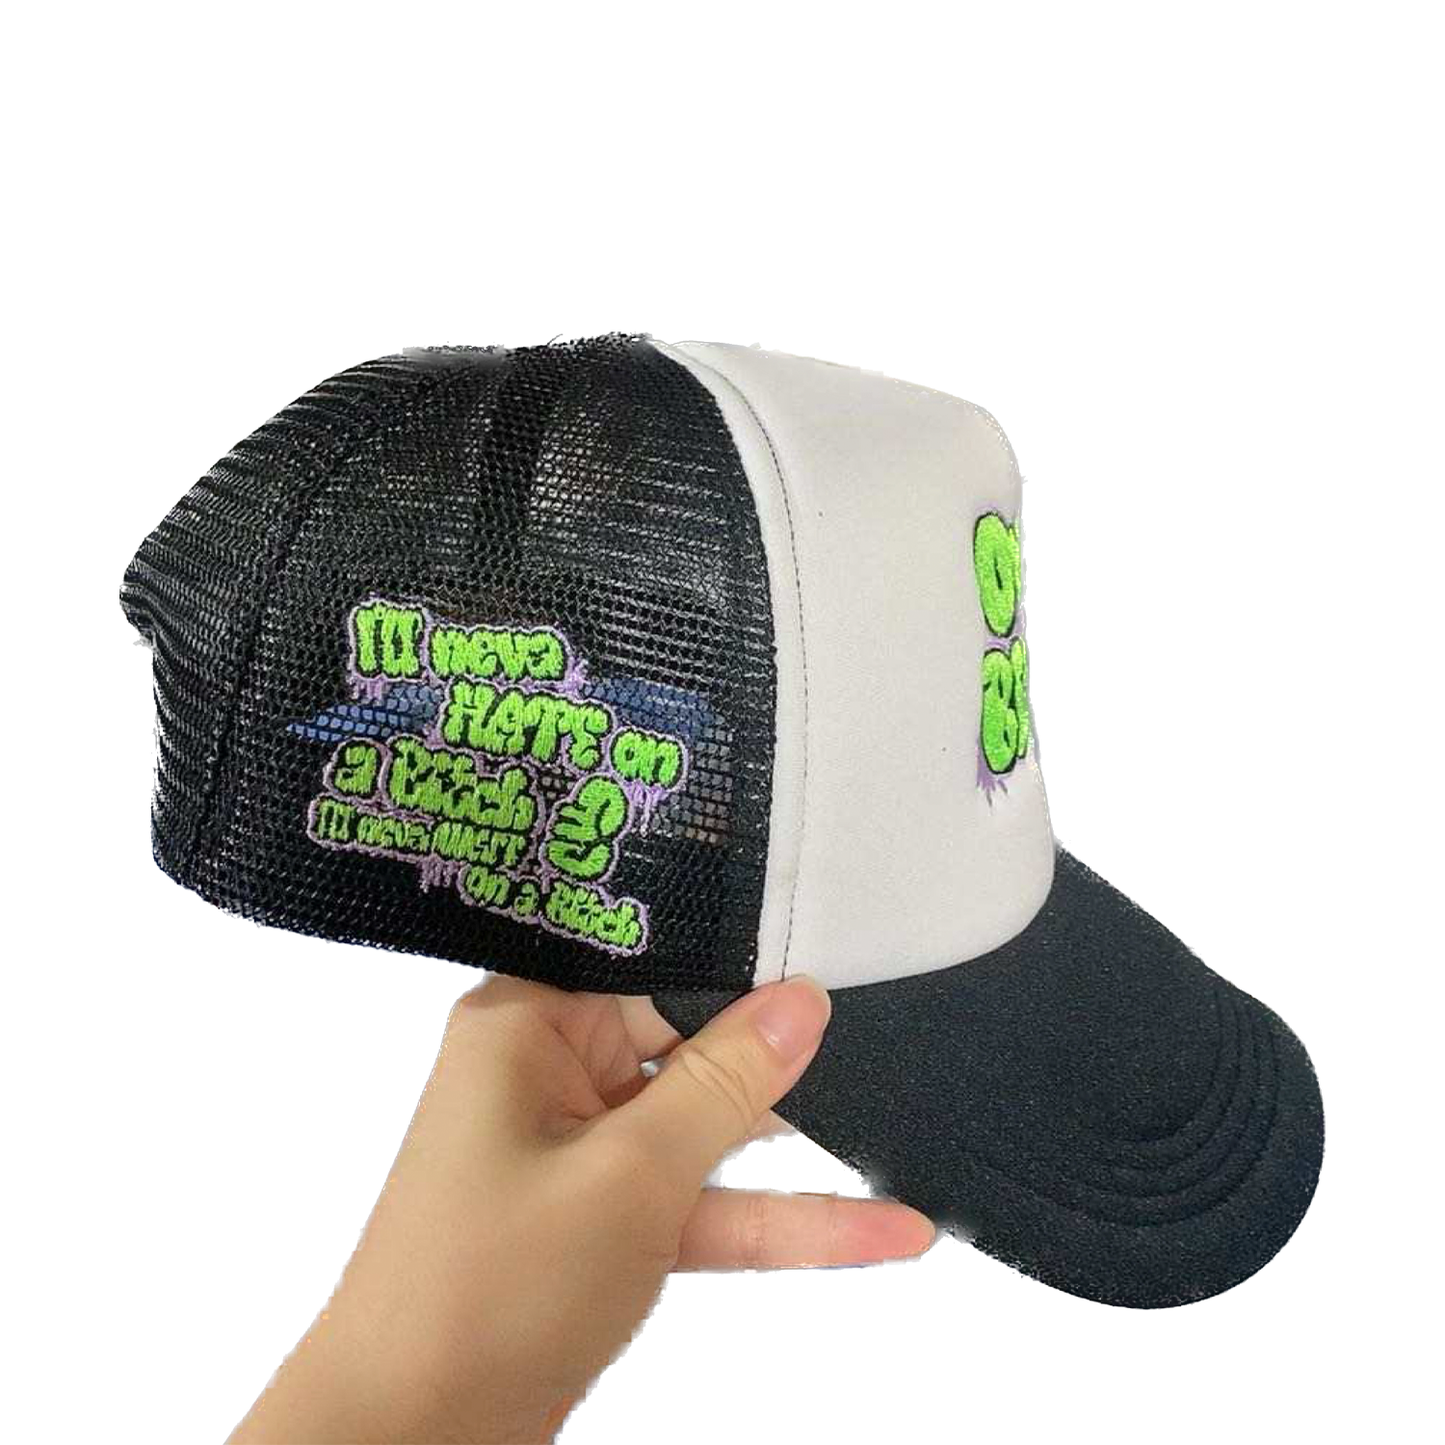 ON A BITCH Trucker Hat 🧢